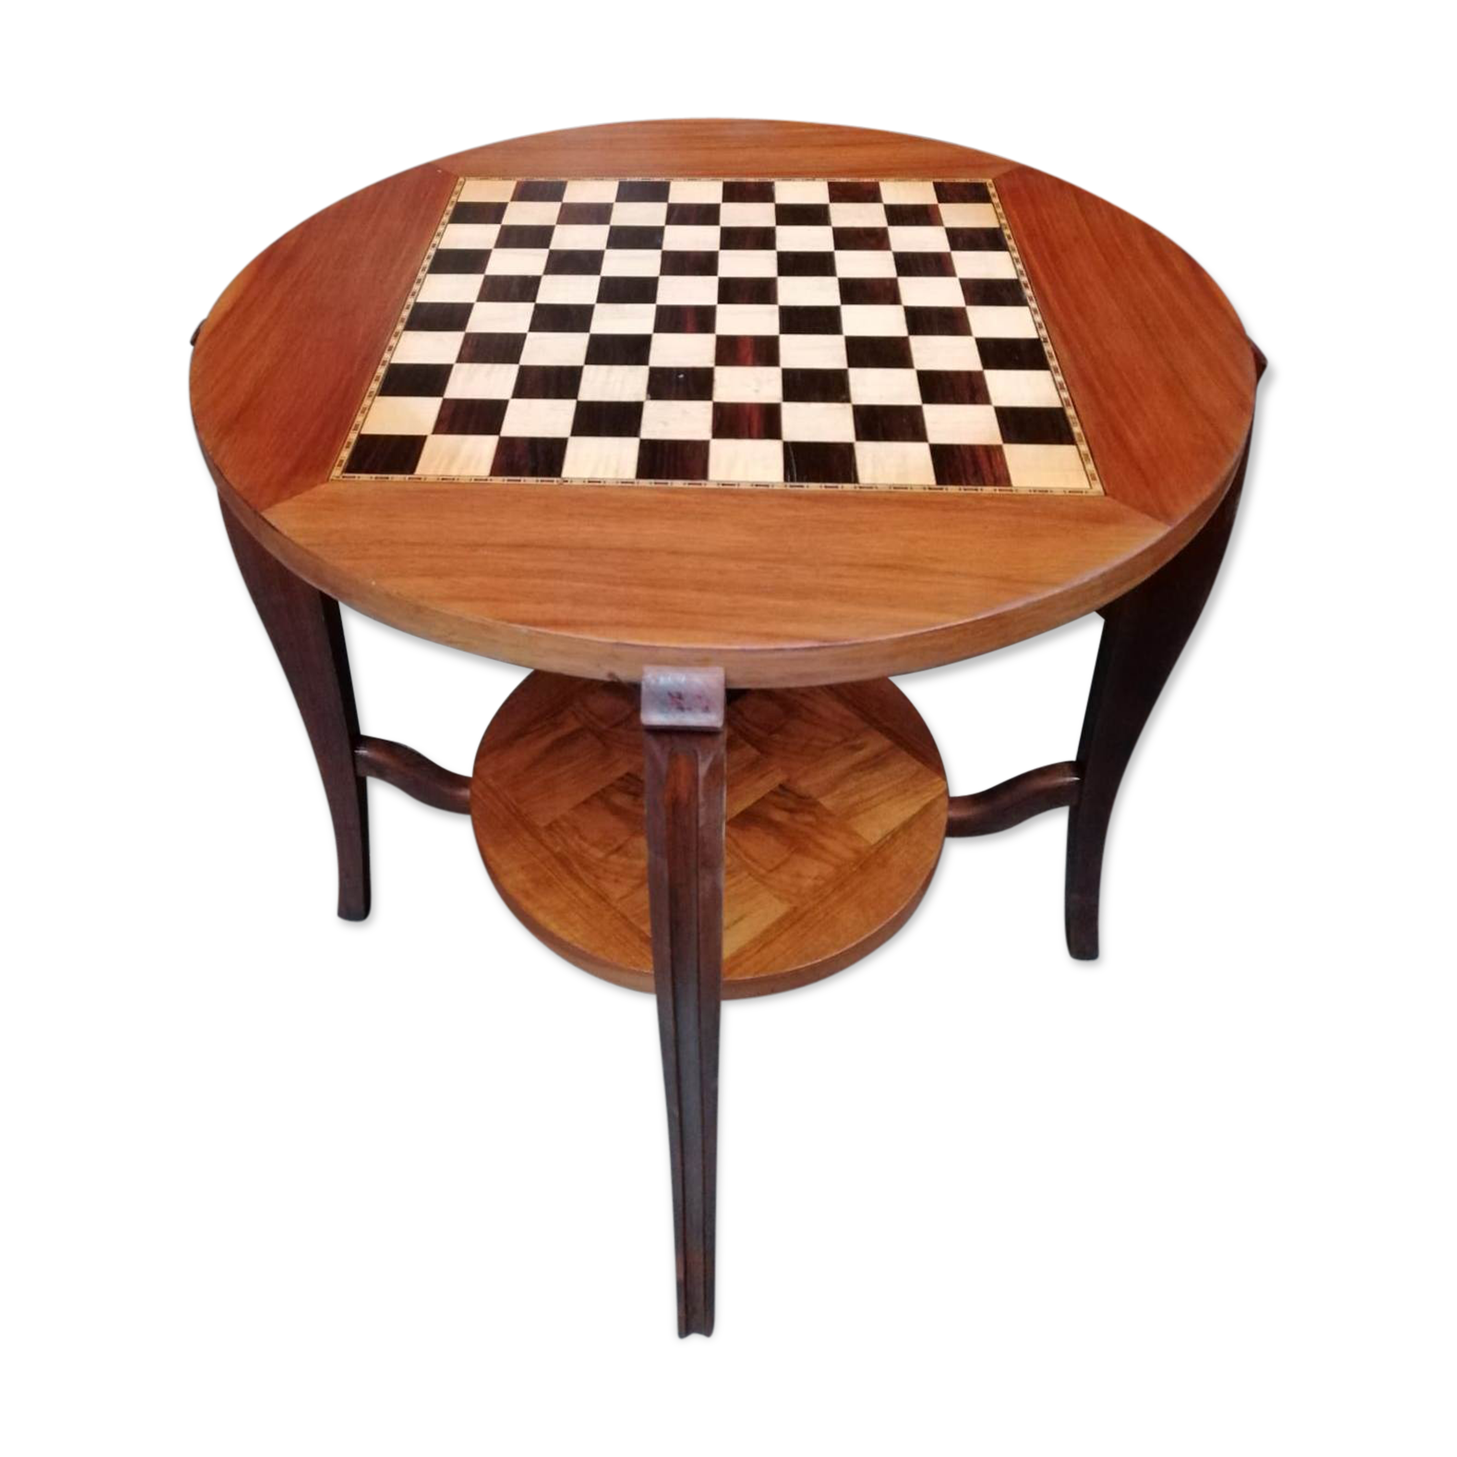 Table d'échecs convertible en table de salon.